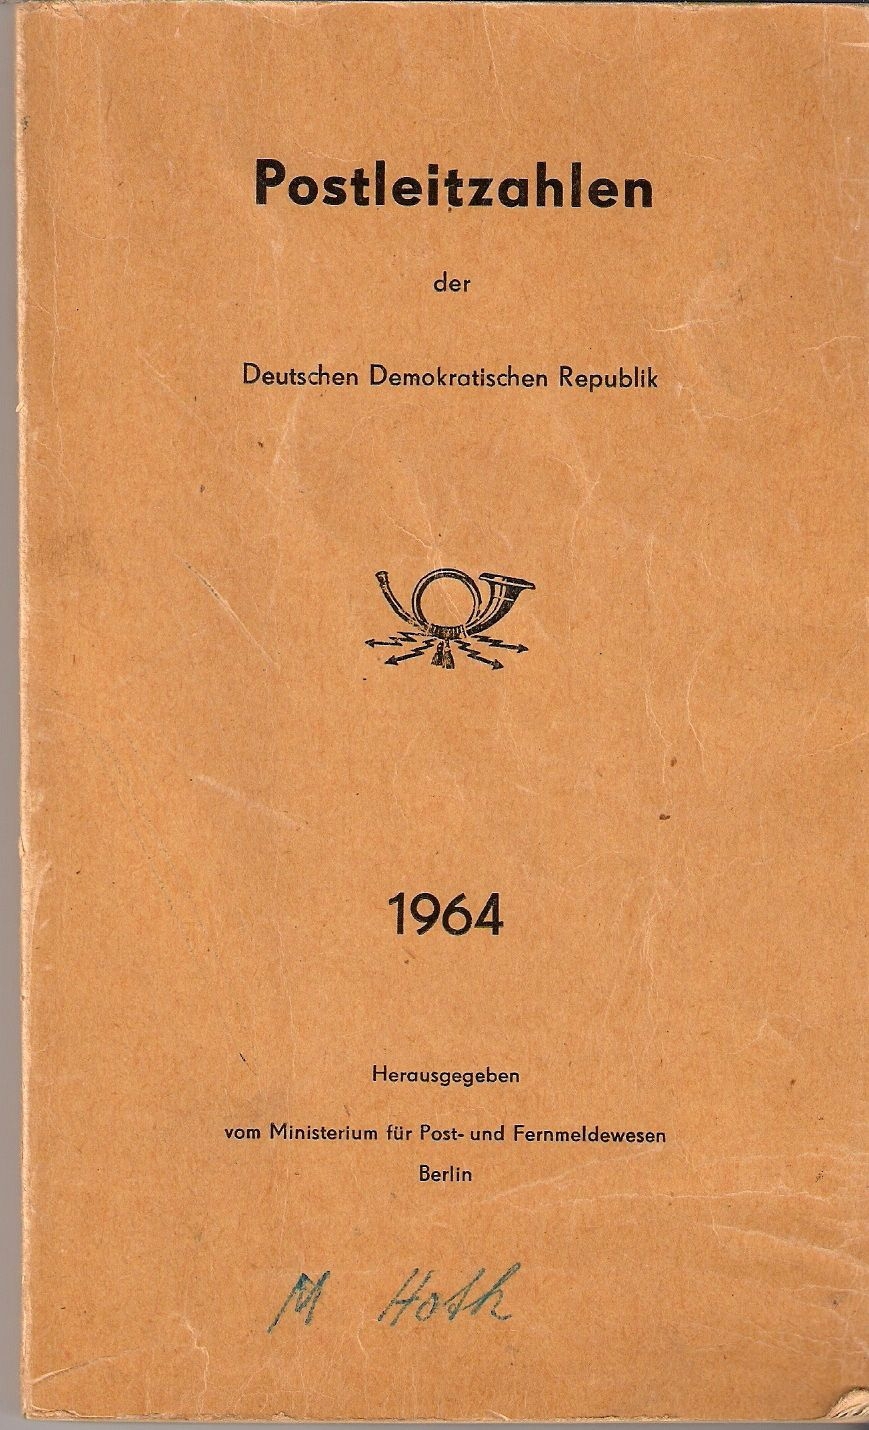 DDR Postleitzahlenbücher